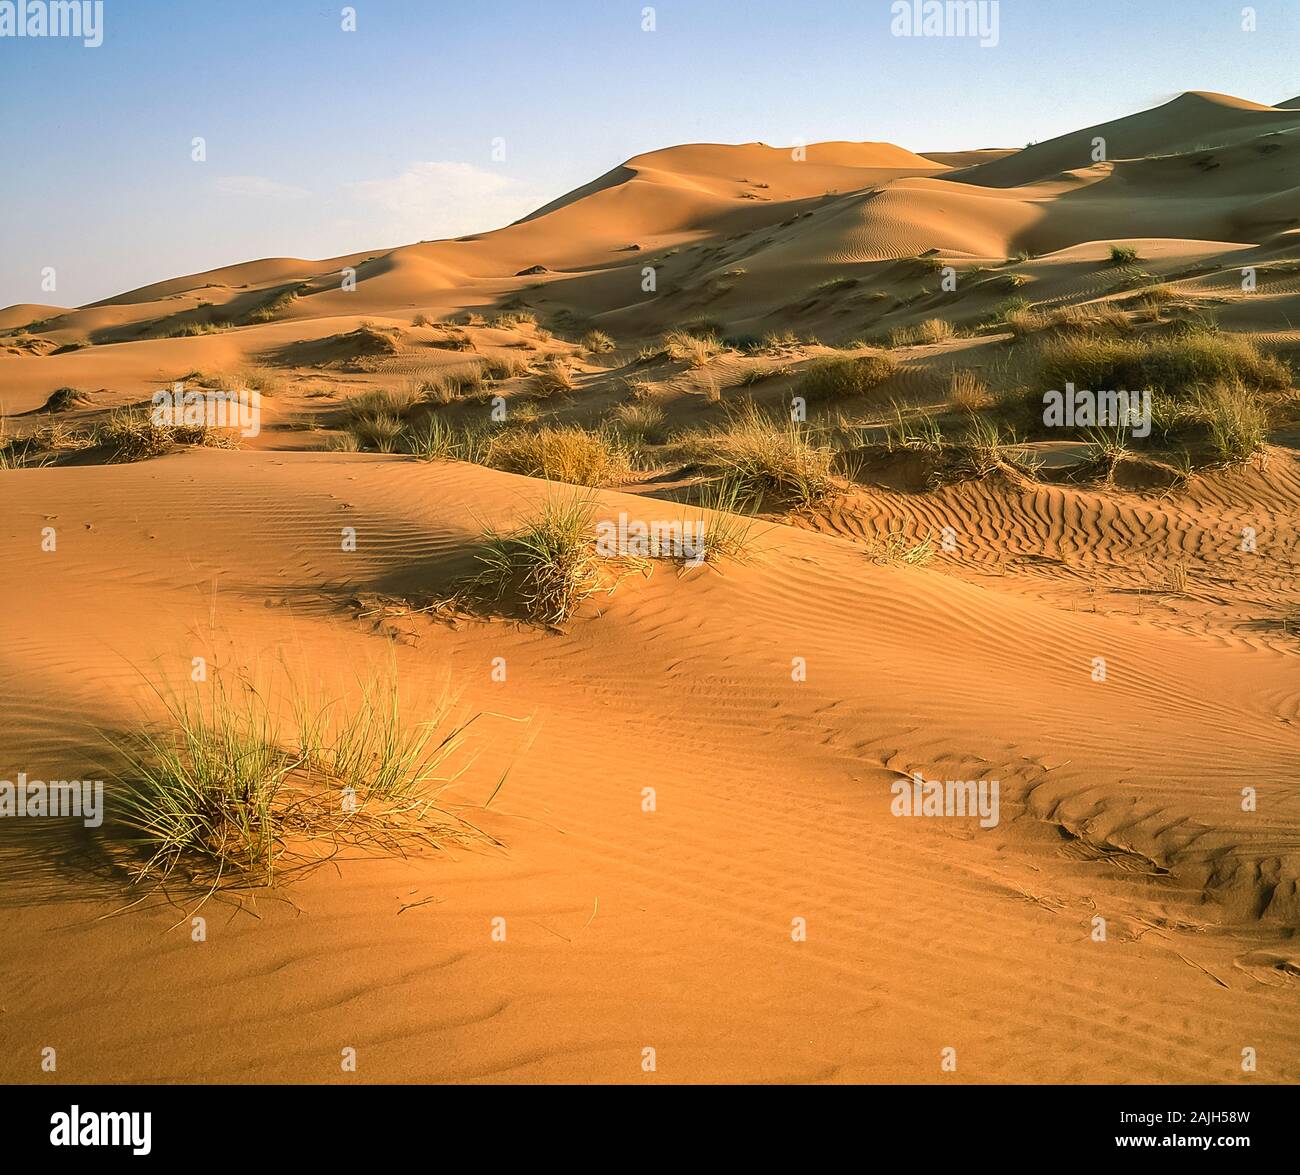 Dubai. Bellissimo paesaggio desertico di dune di sabbia soffiate dal vento vicino al villaggio di al Dhaid sulla strada tra la città di Dubai e la città rurale oasi fortezza di Hatta Foto Stock